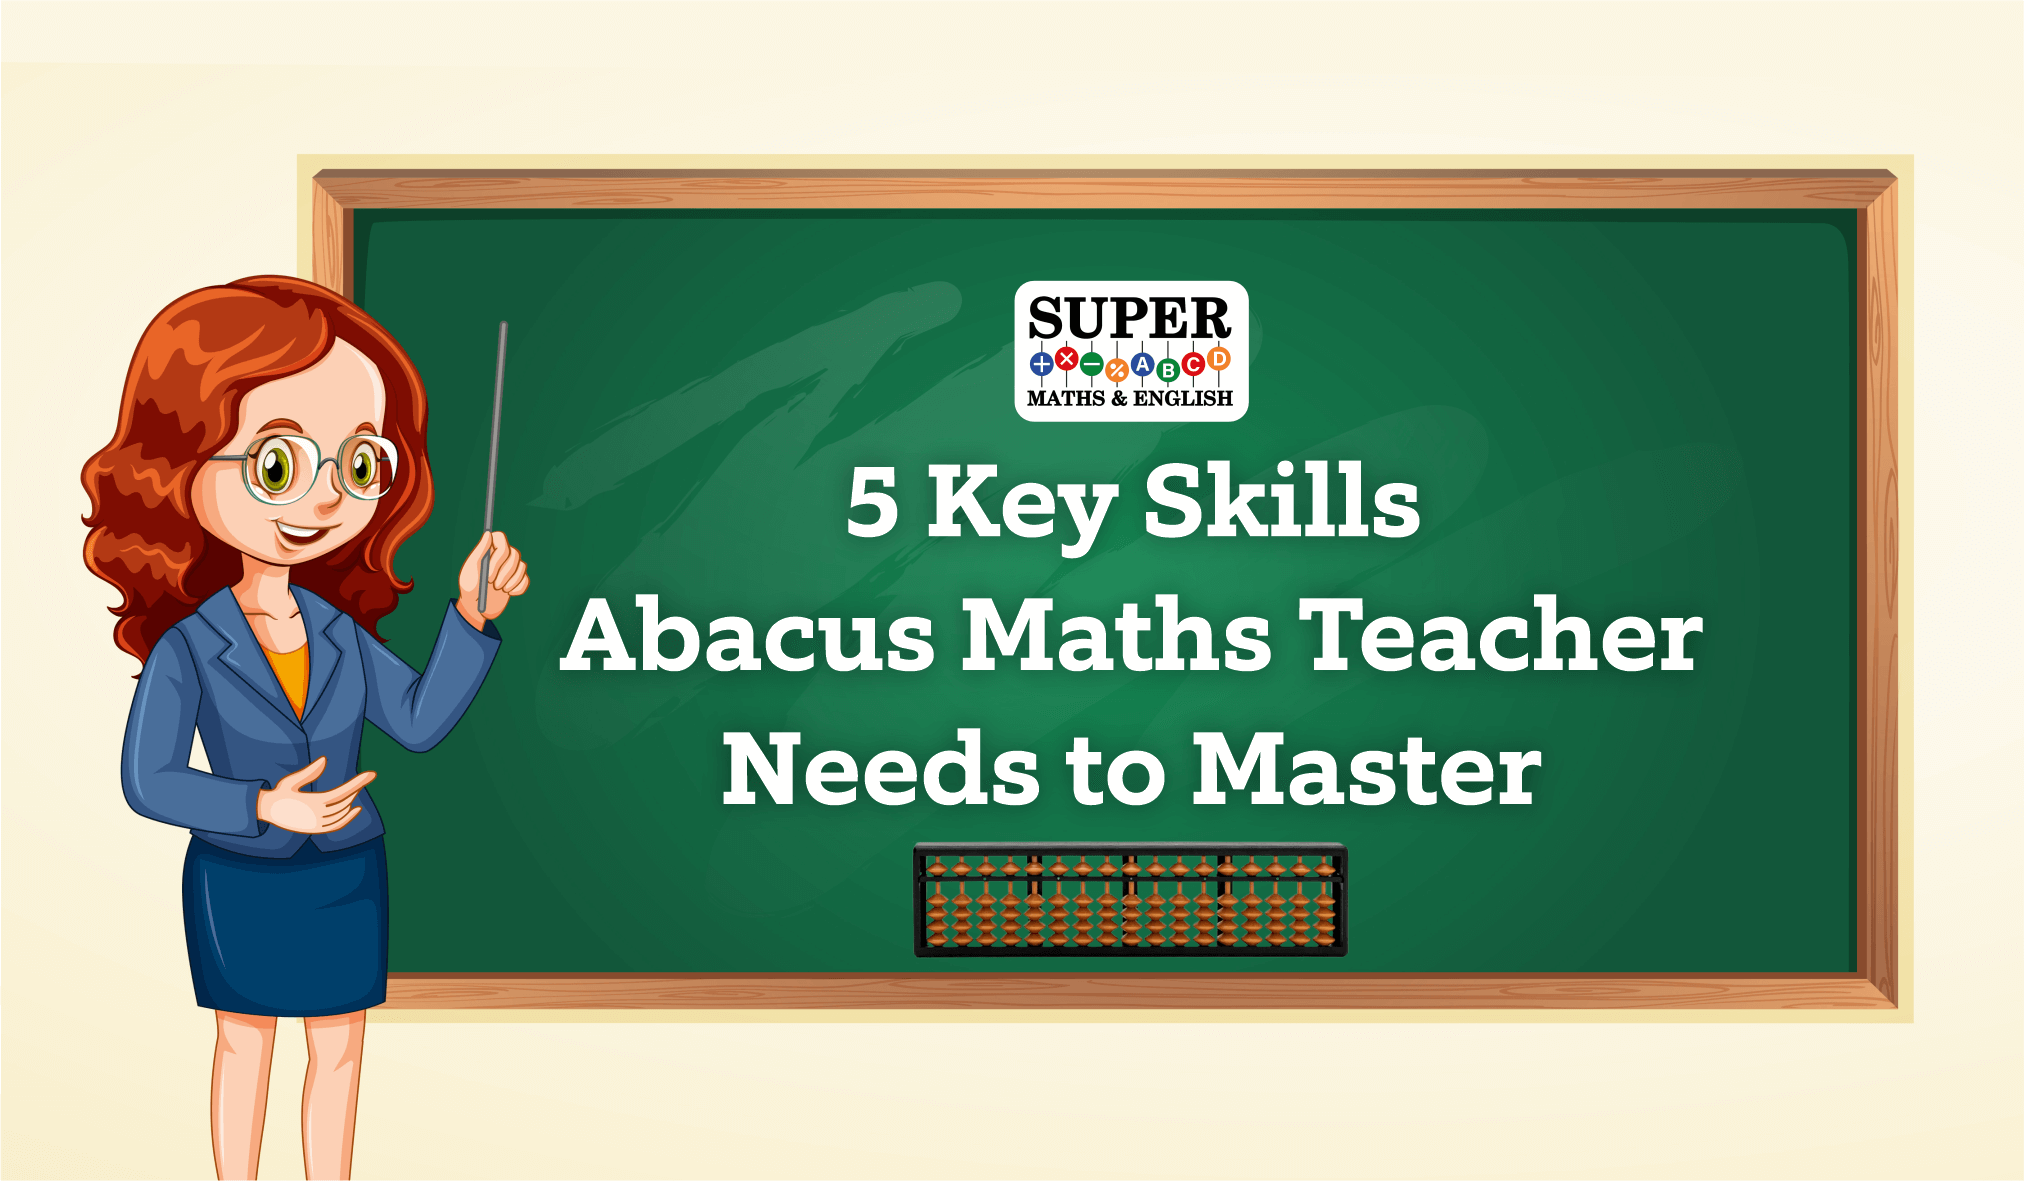 Abacus Maths Teacher